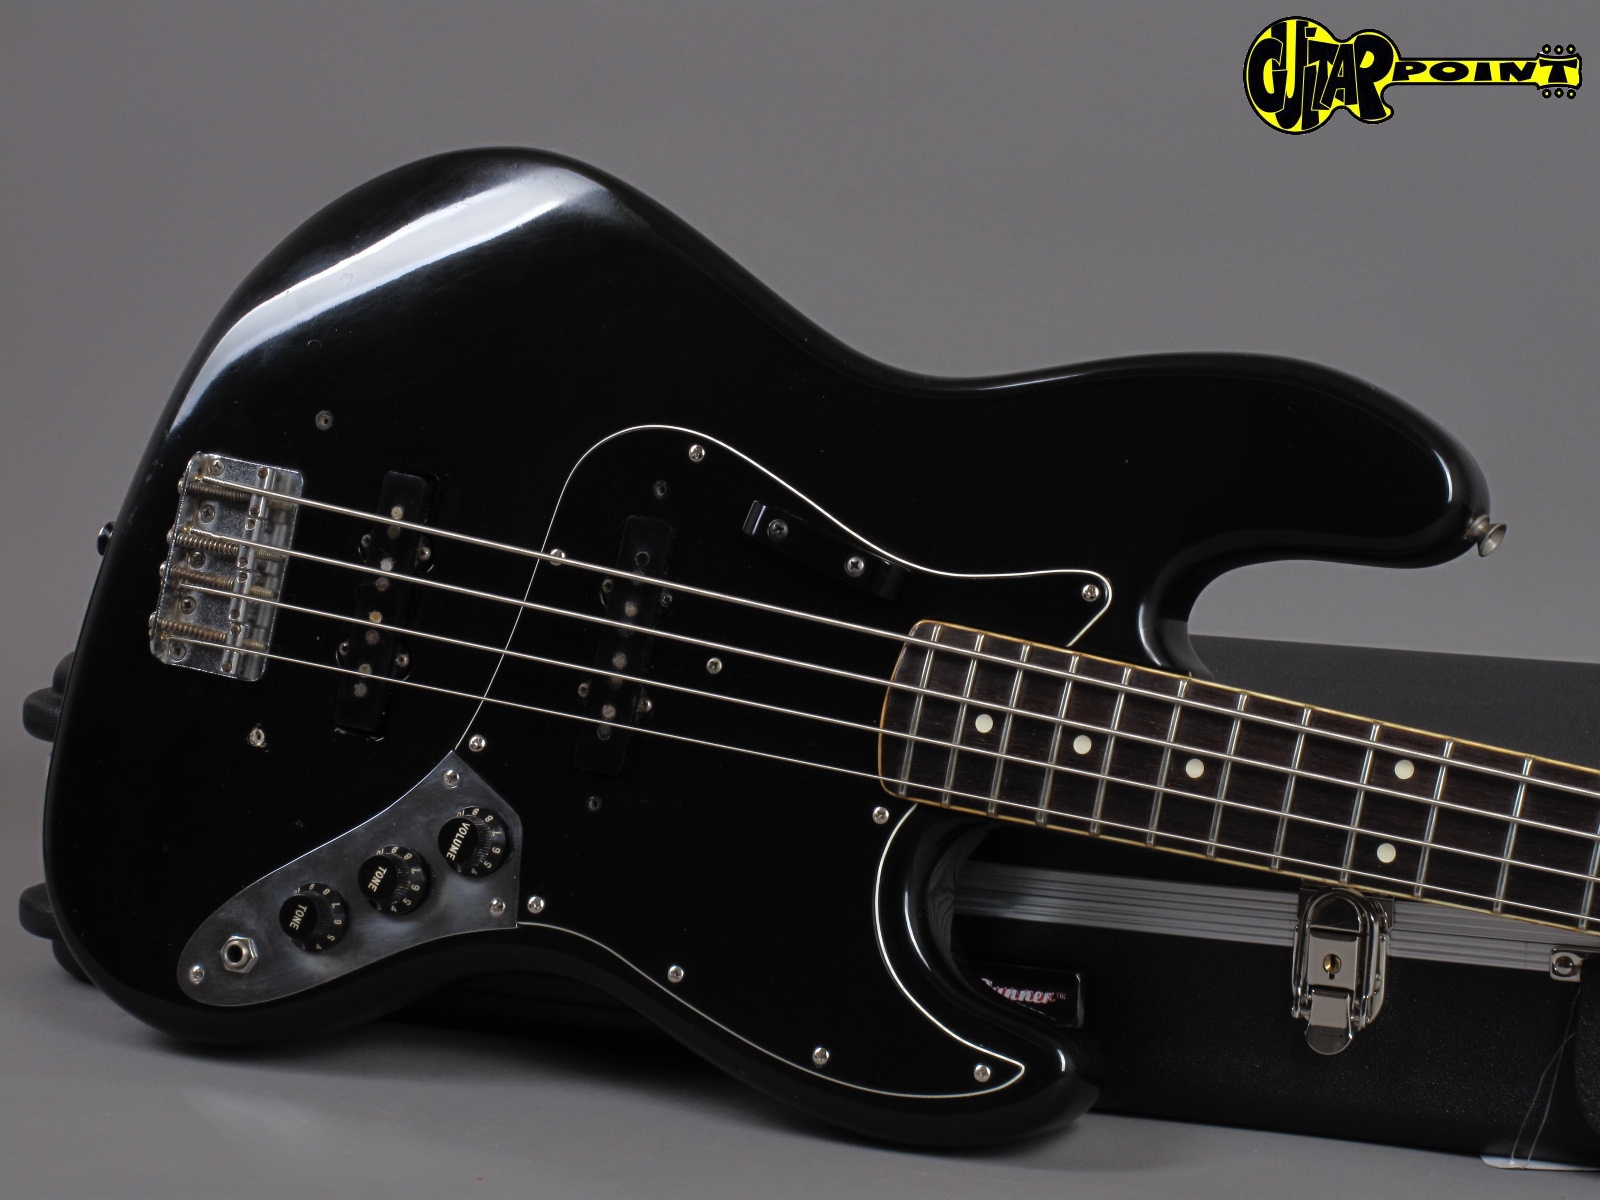 1982 Fender Jazz Bass - Black - GuitarPoint